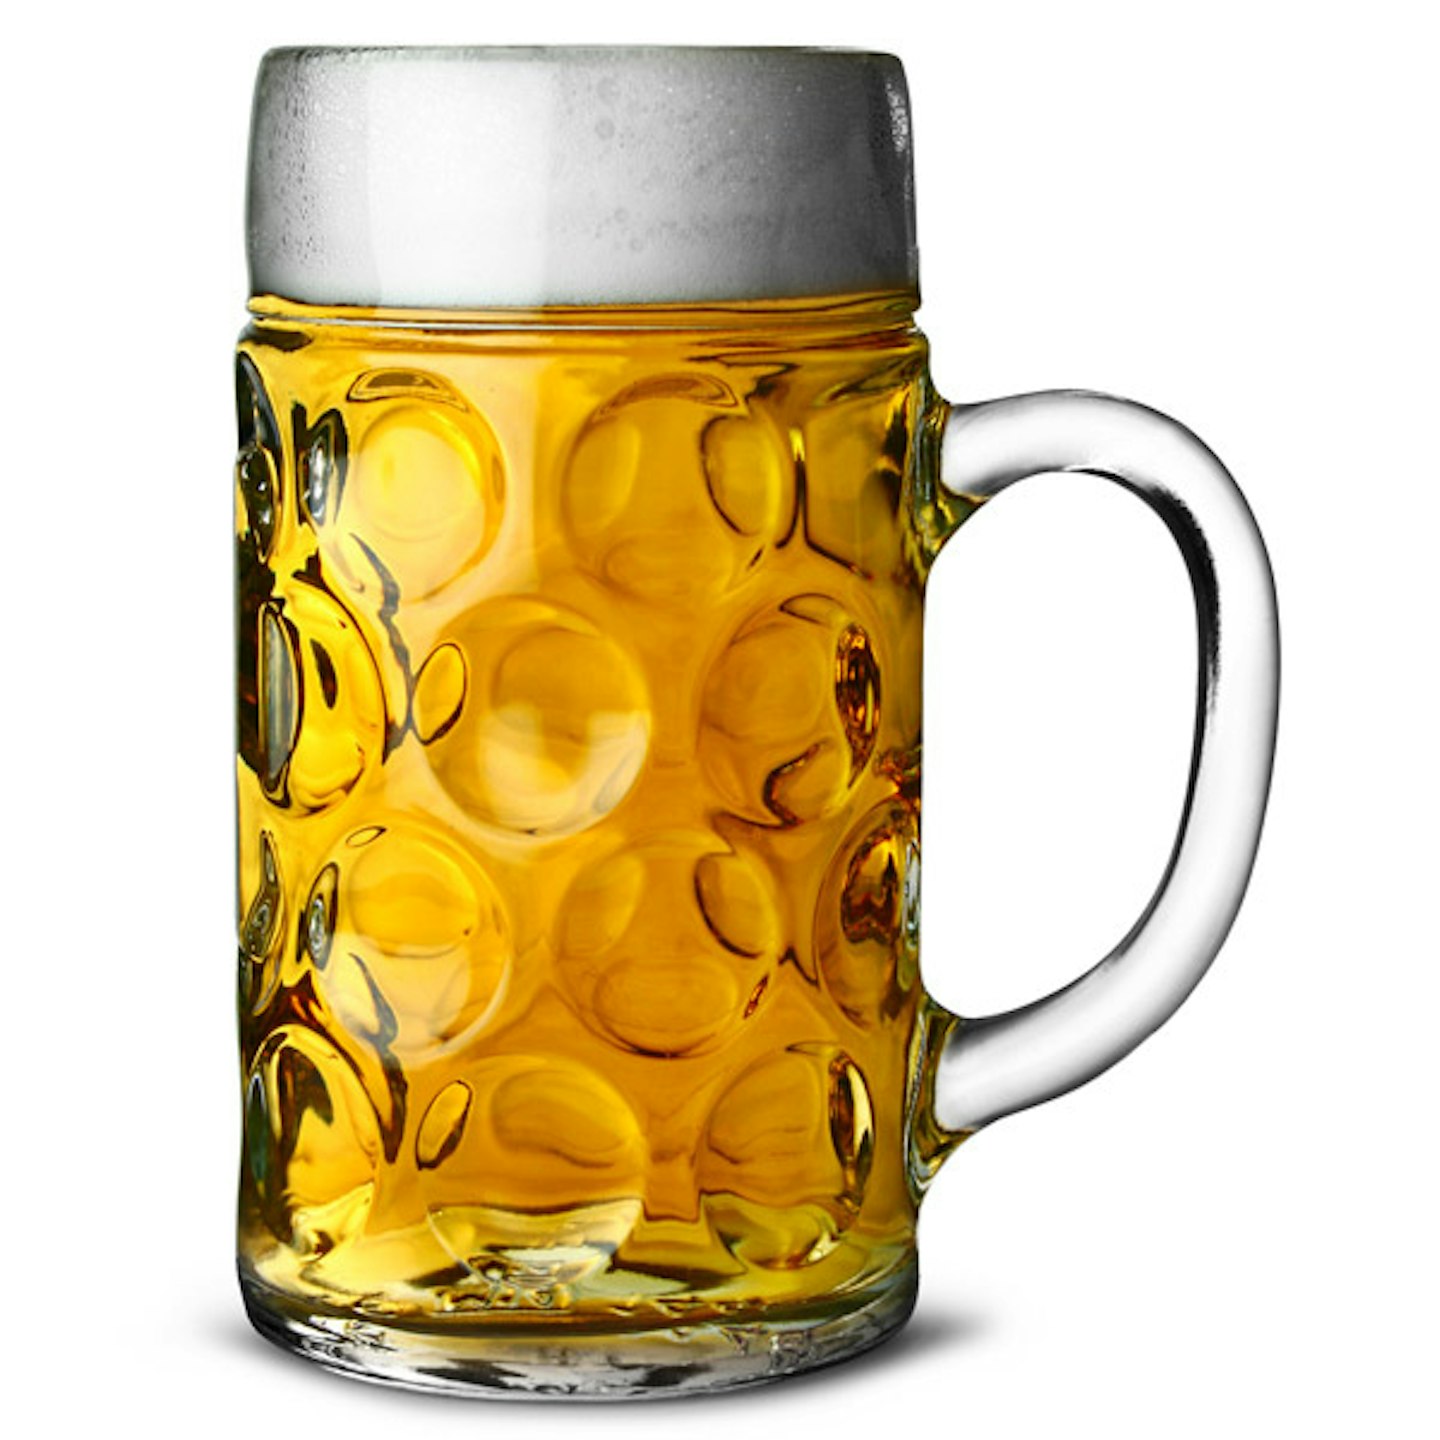 German beer stein glass - 2 pints